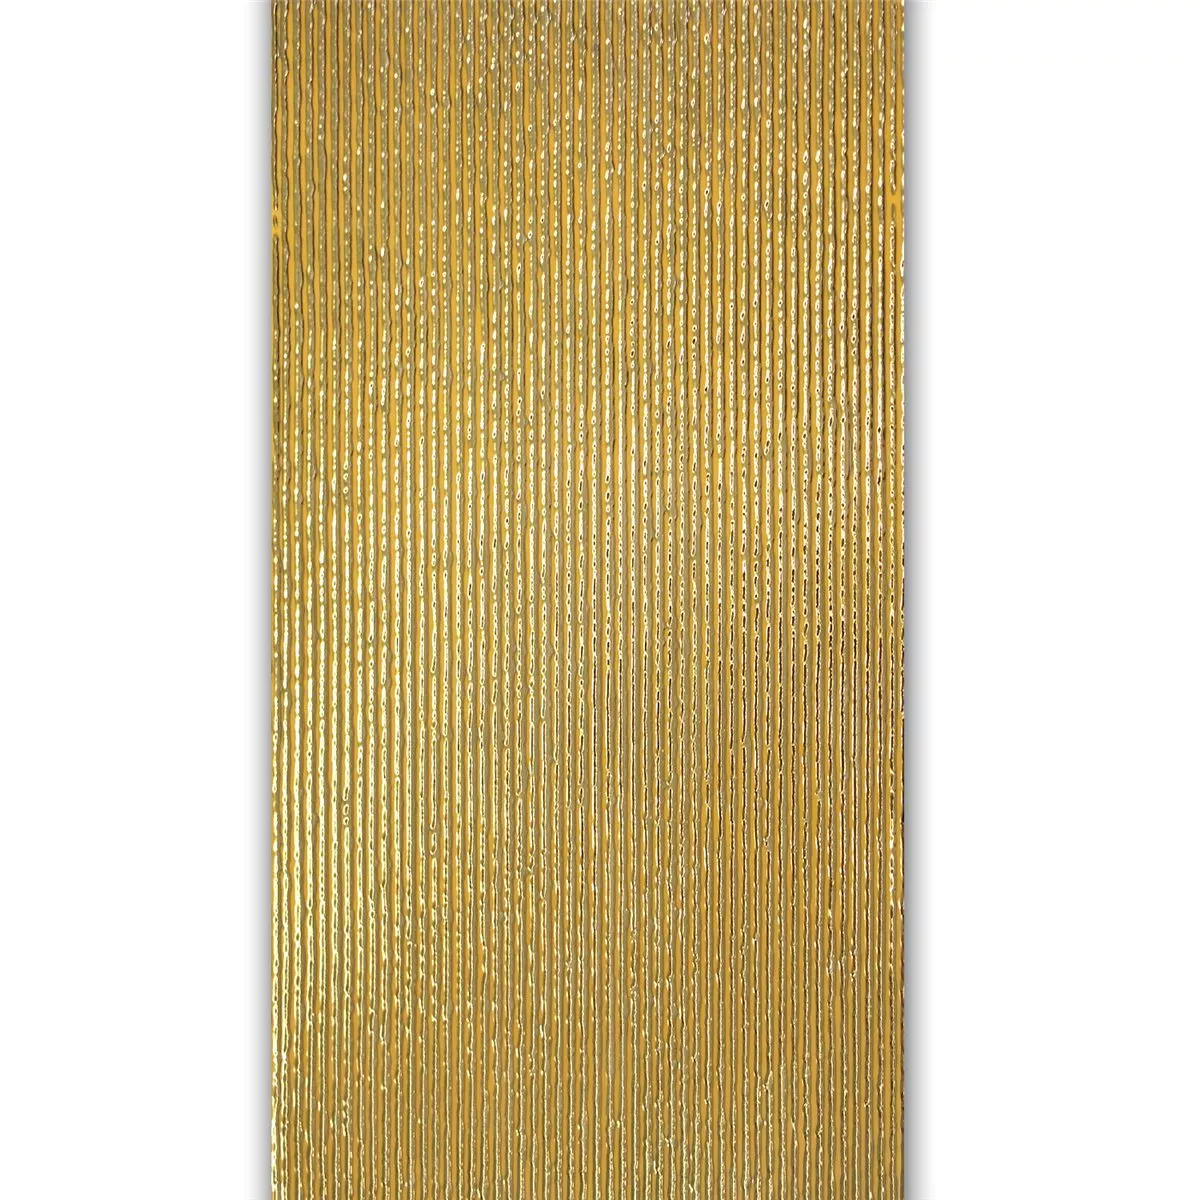 Wand Decor Tegel Guld 30x60cm